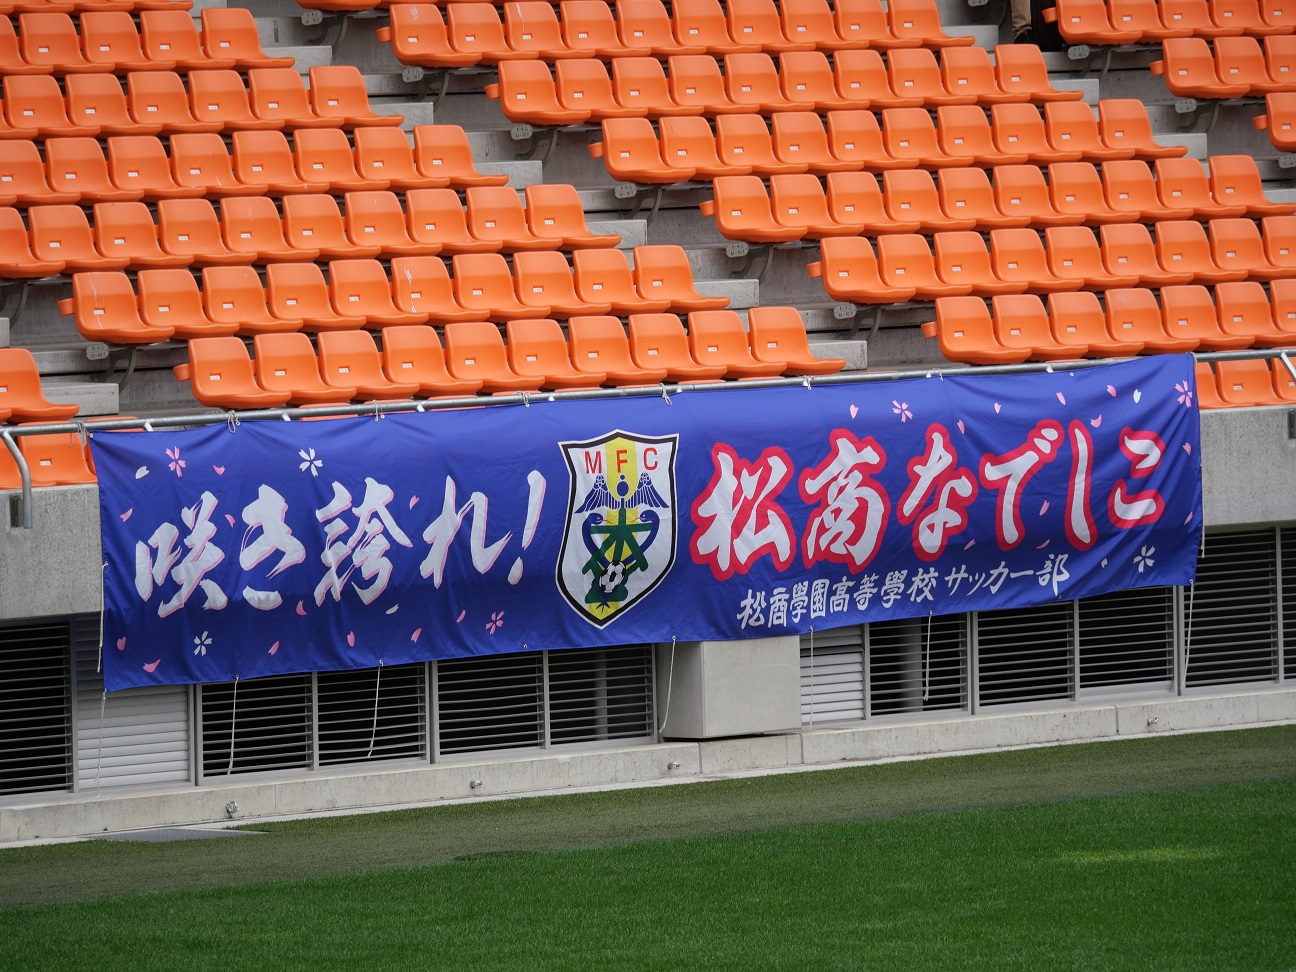 長野県高校女子サッカーの頂へ 下忍のac長野パルセイロレディース応援ブログ2冊目